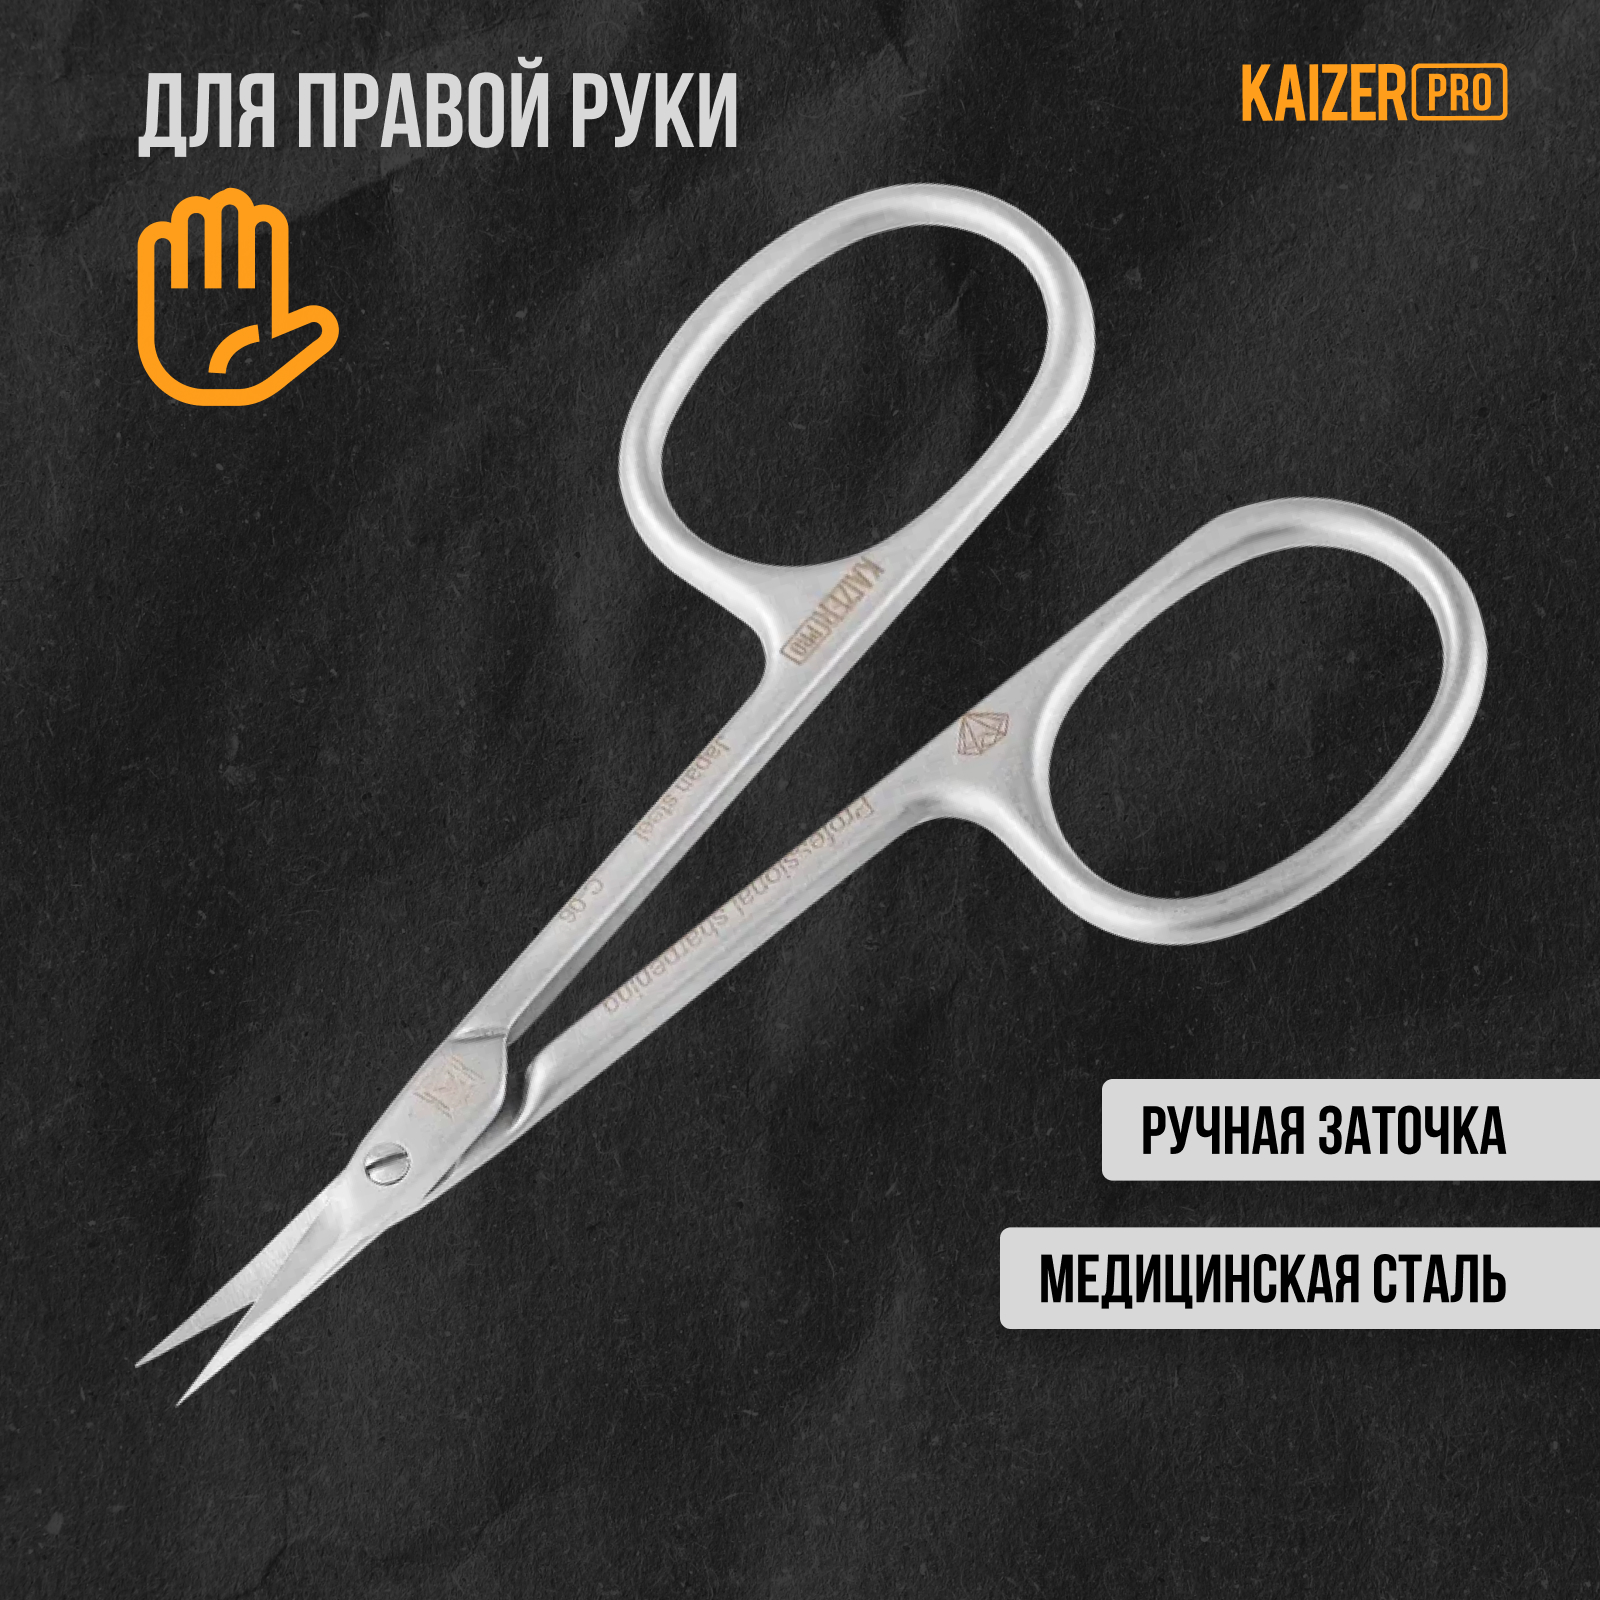 Ножницы маникюрные Kaizer pro для кутикулы профессиональн.заточка 90мм цвет сатин хром ножницы для кутикулы metaleks rms 08rp изогнутые 1 шт